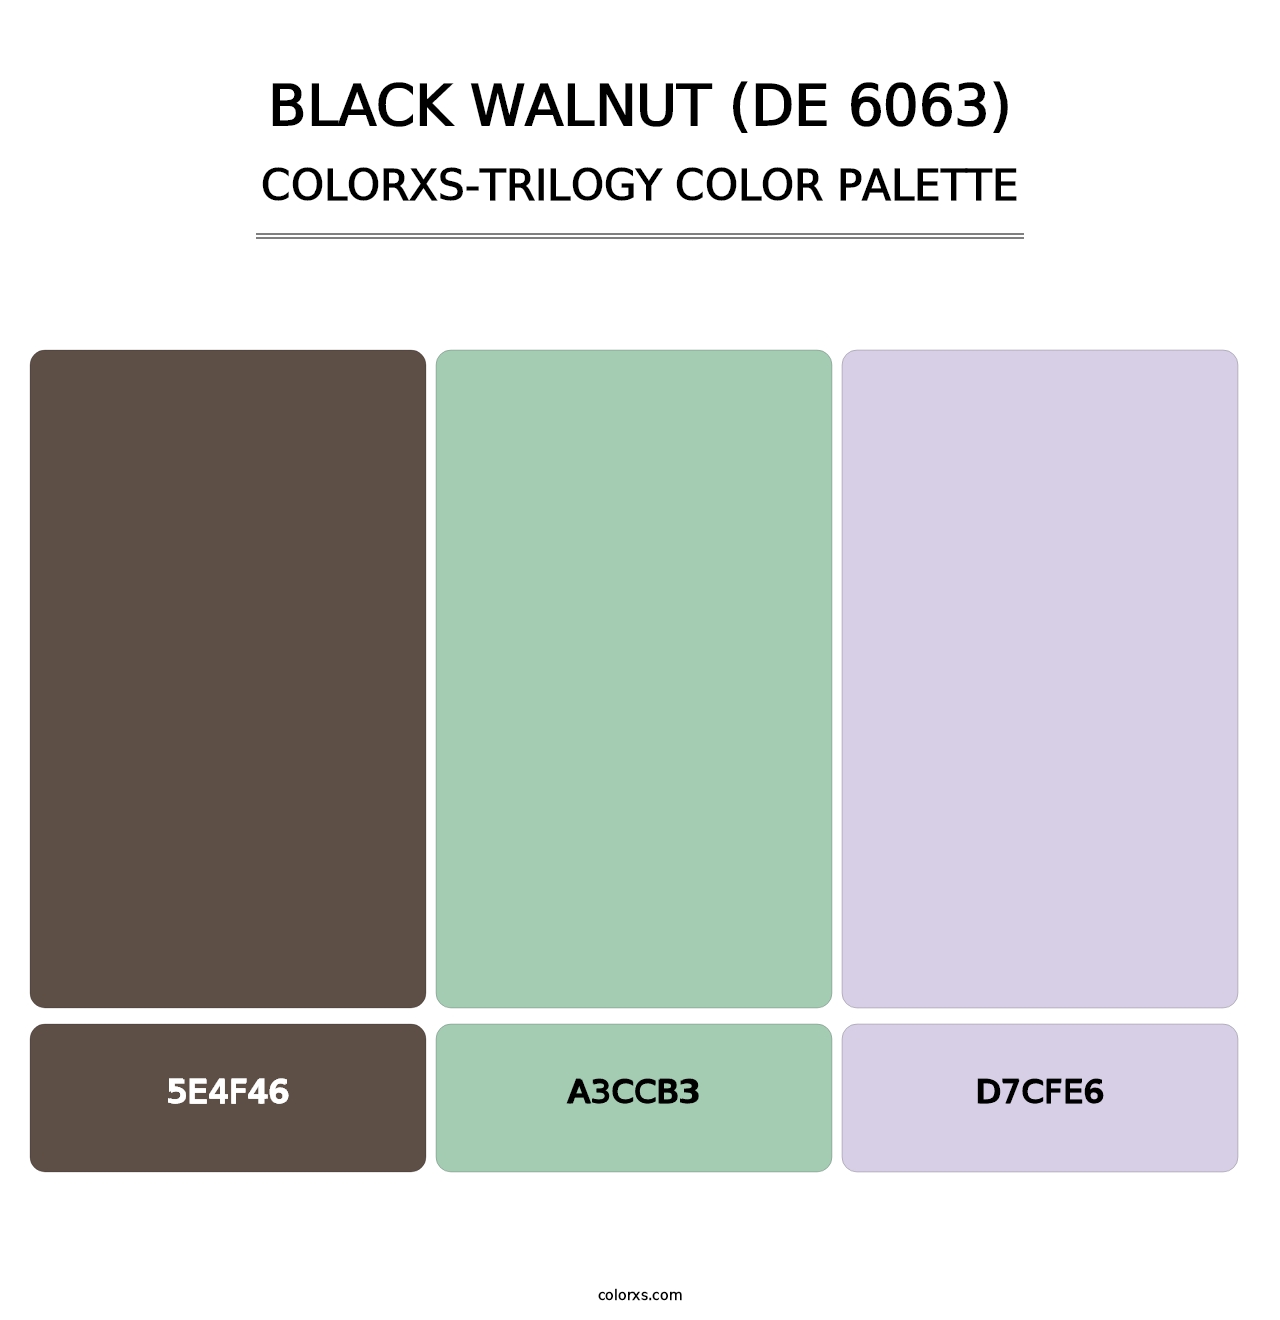 Black Walnut (DE 6063) - Colorxs Trilogy Palette